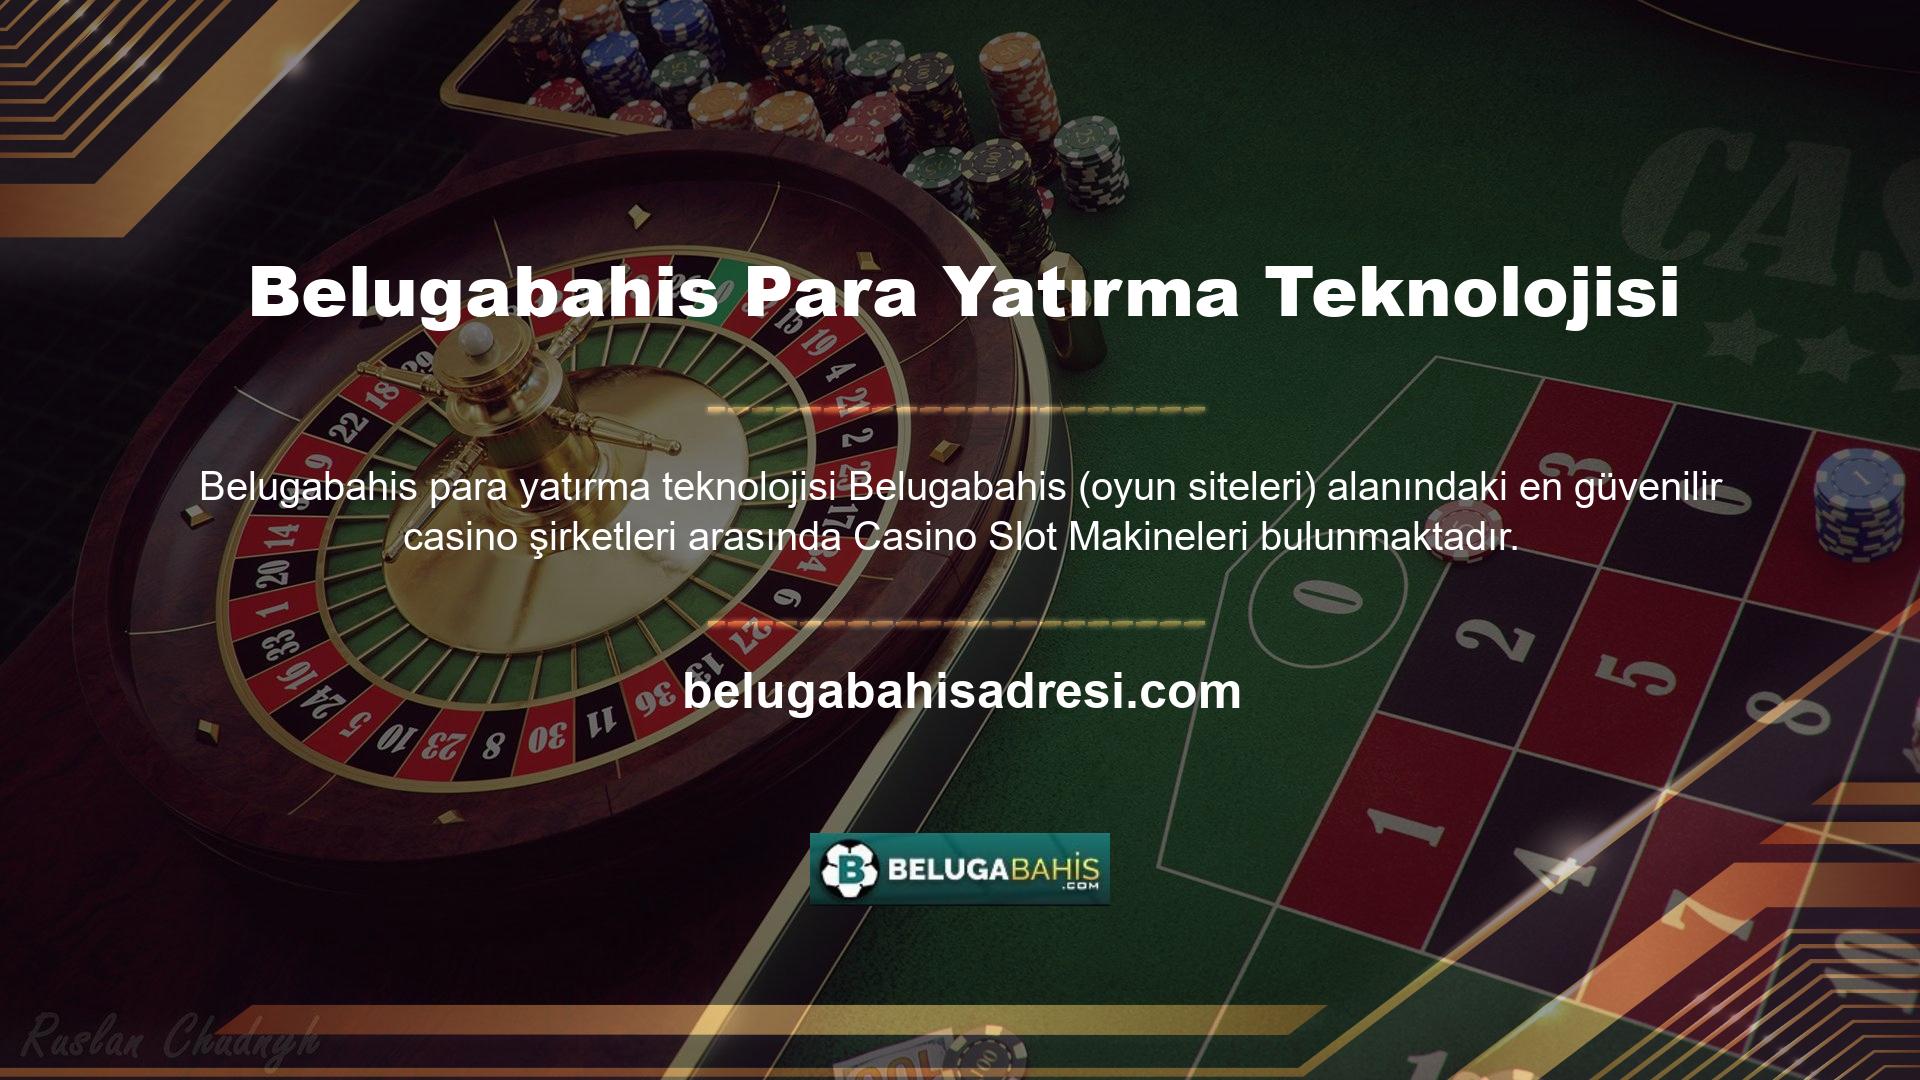 Belugabahis bahis web sitesinde, tüm sermaye yatırımı yöntemleri kullanıcının "Hesabım" hesabı altında yönetilir